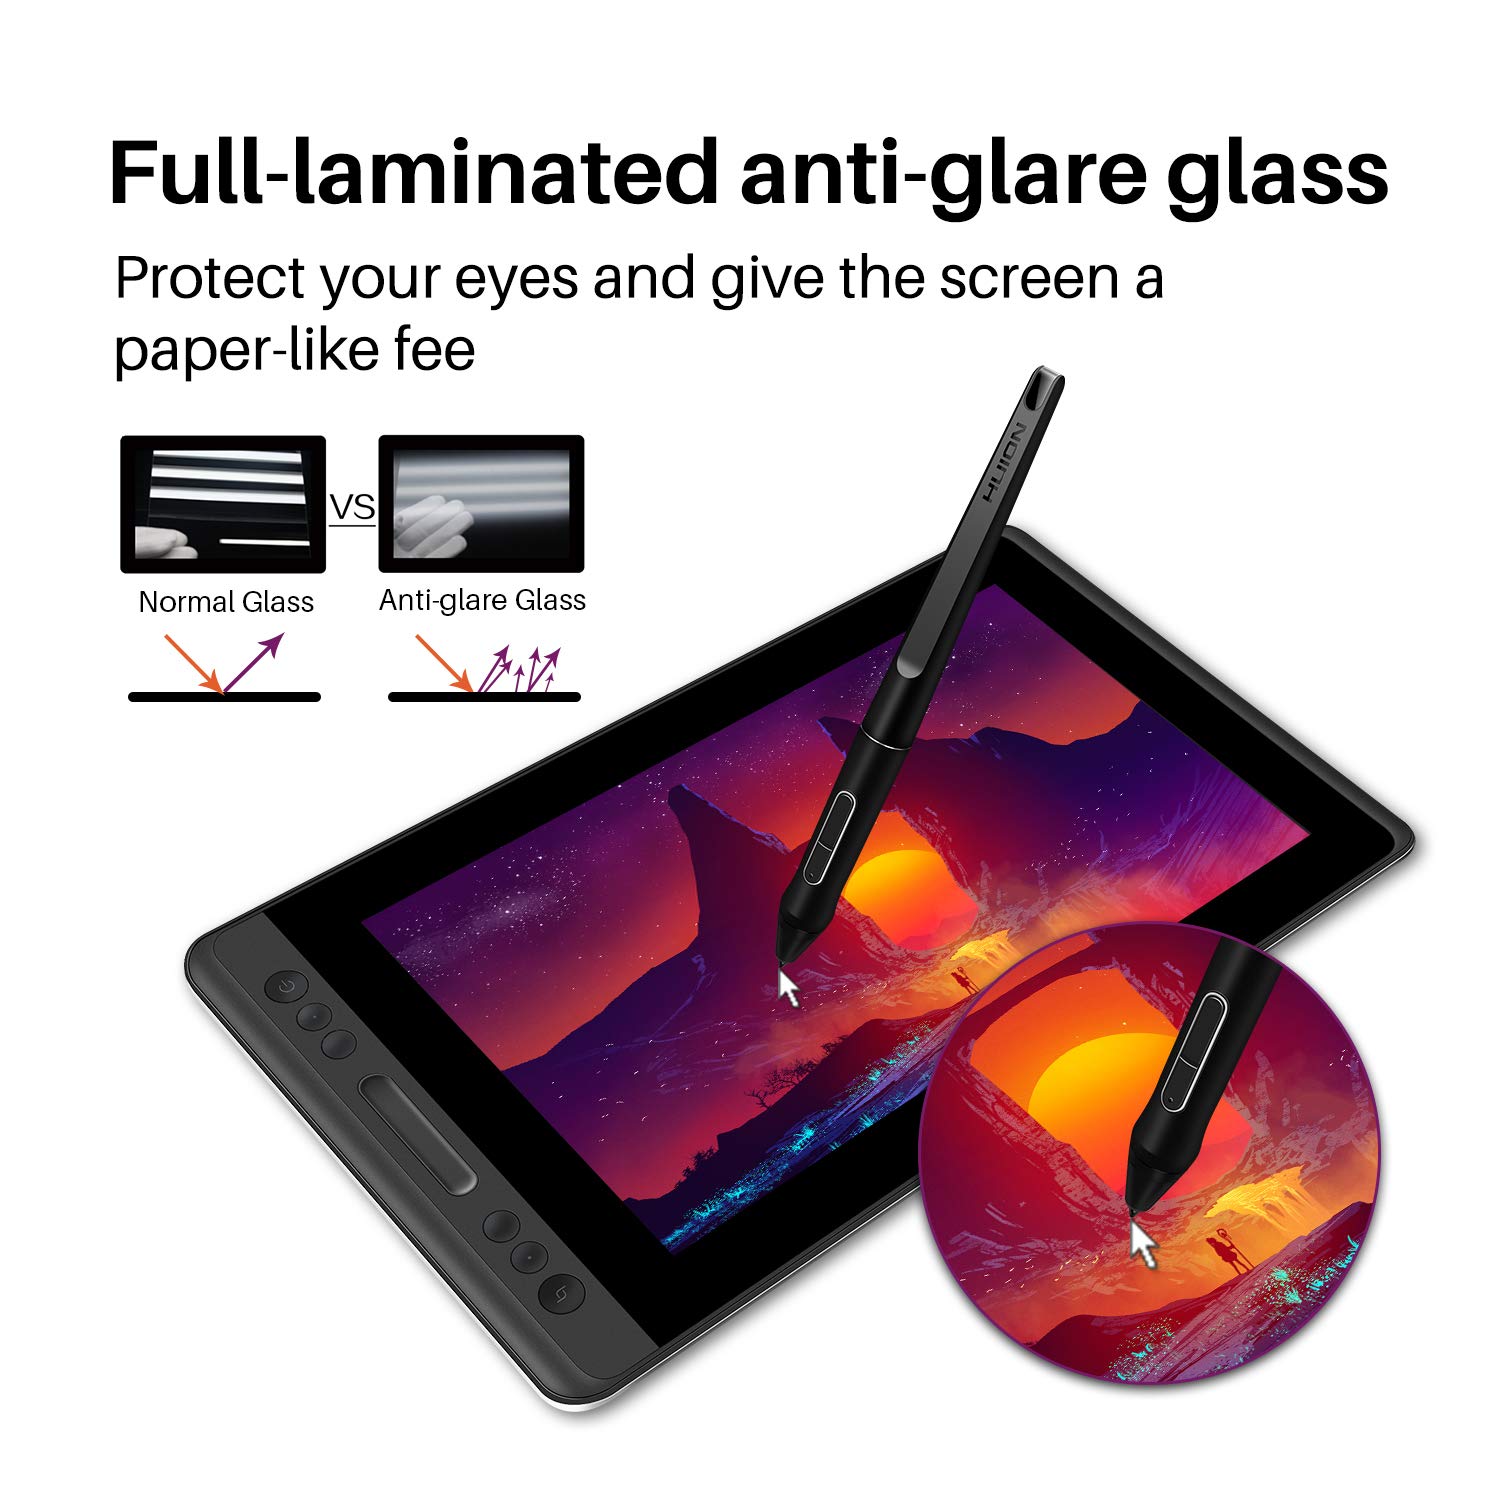 Mua Huion Kamvas Pro 13 Full Laminated Anti Glare Glass Graphic Drawing Monitor 120 Srgb Gamut 5467